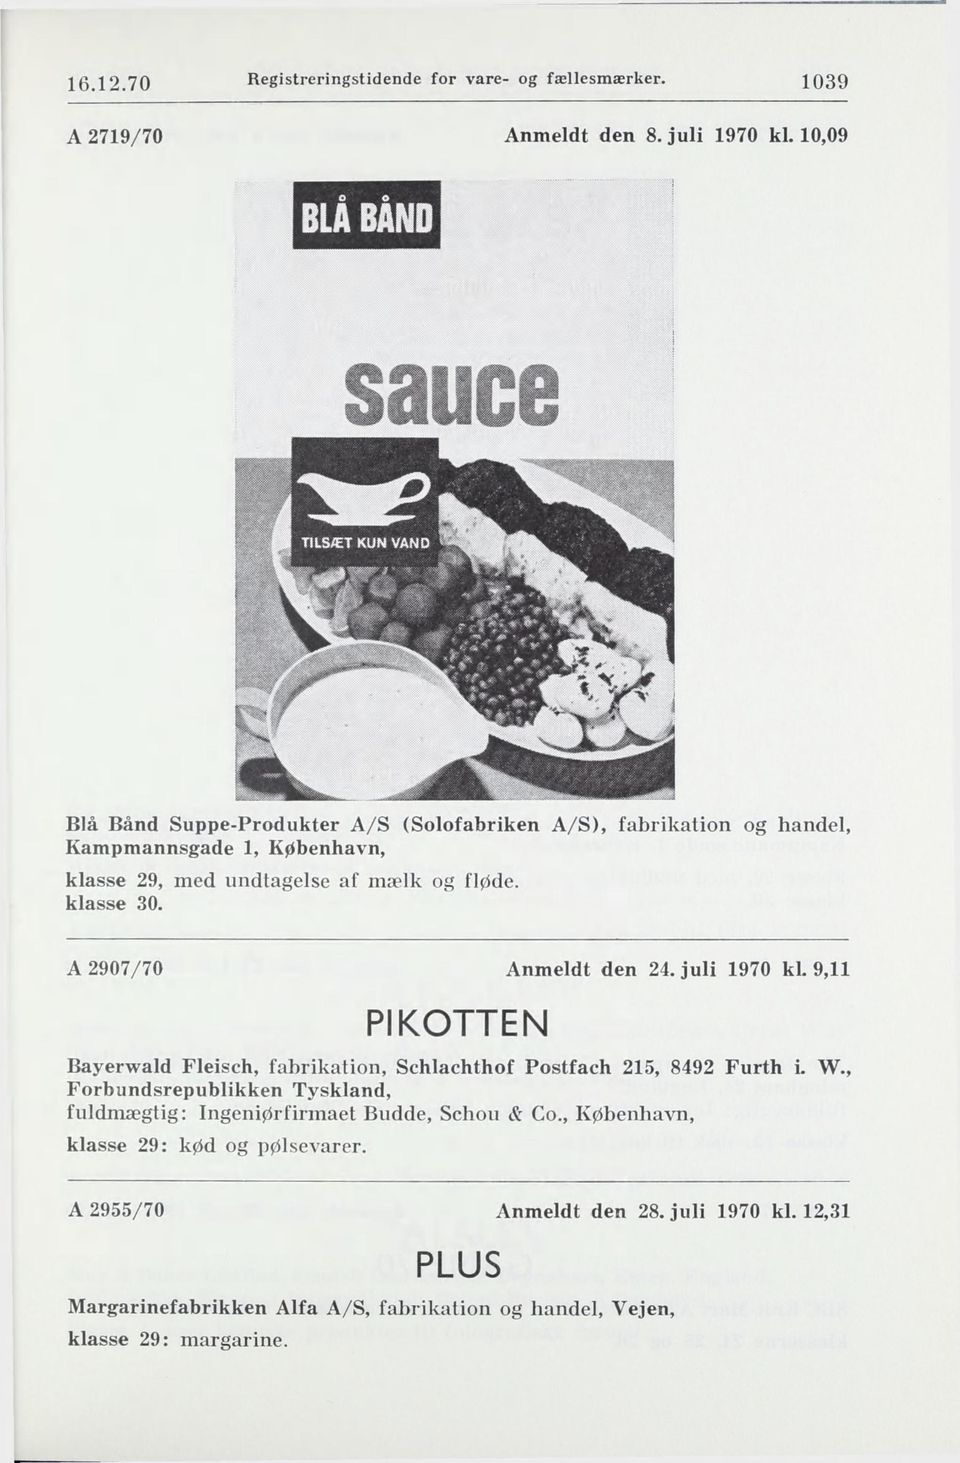 A 2907/70 Anmeldt den 24. juli 1970 kl. 9,11 PIKOTTEN Bayerwald Fleisch, fabrikation, Schlachthof Postfach 215, 8492 Furth L W.